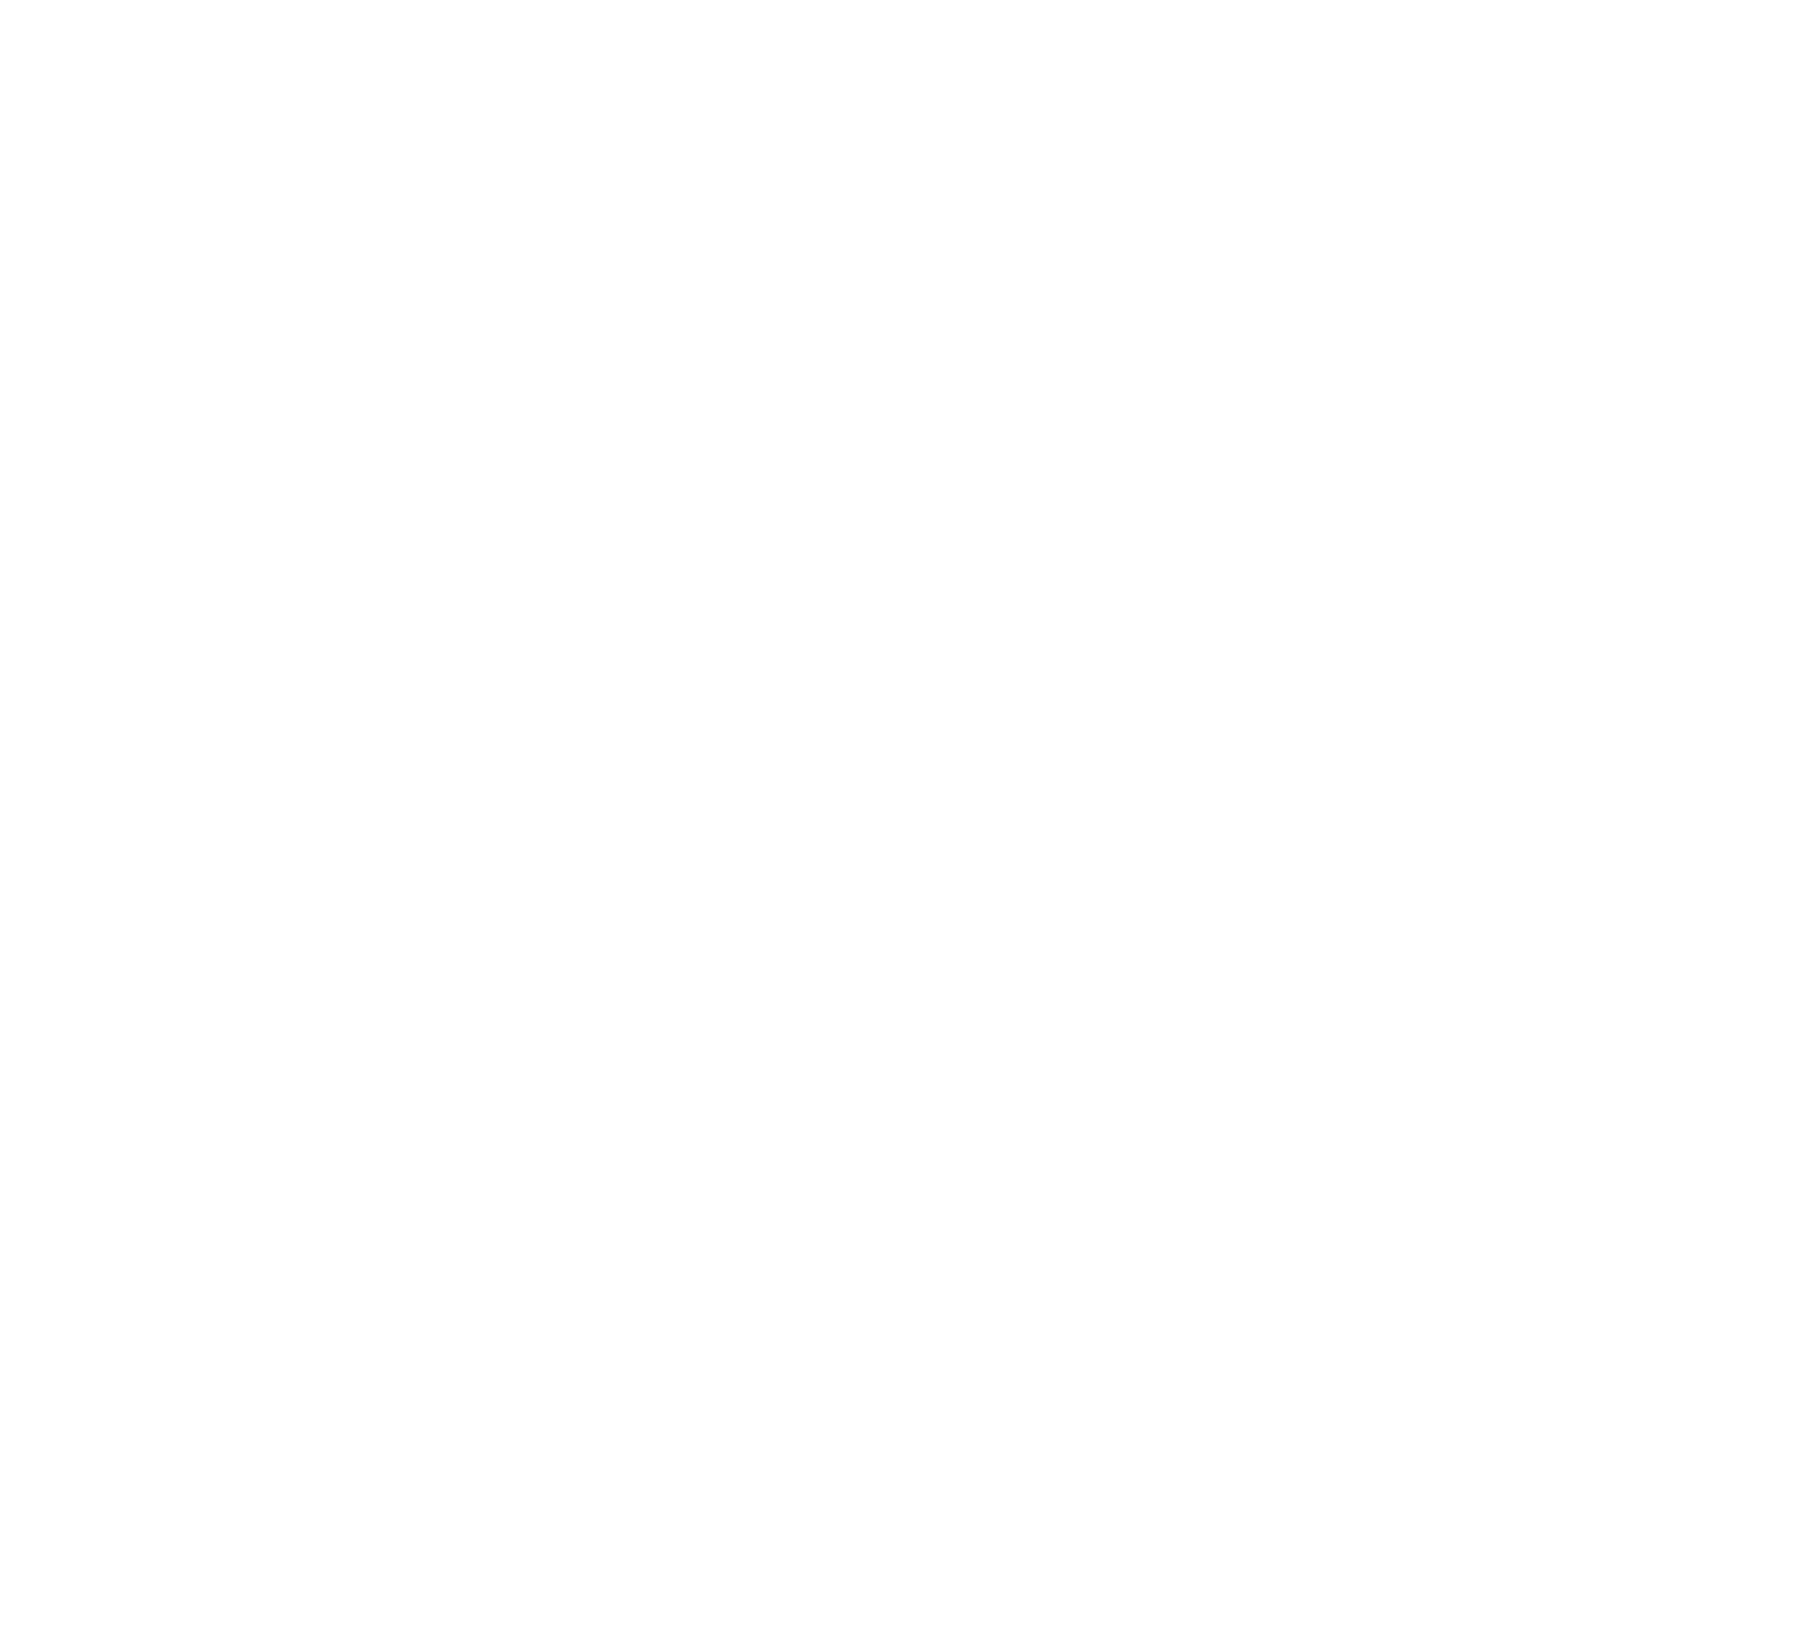 Inviqa